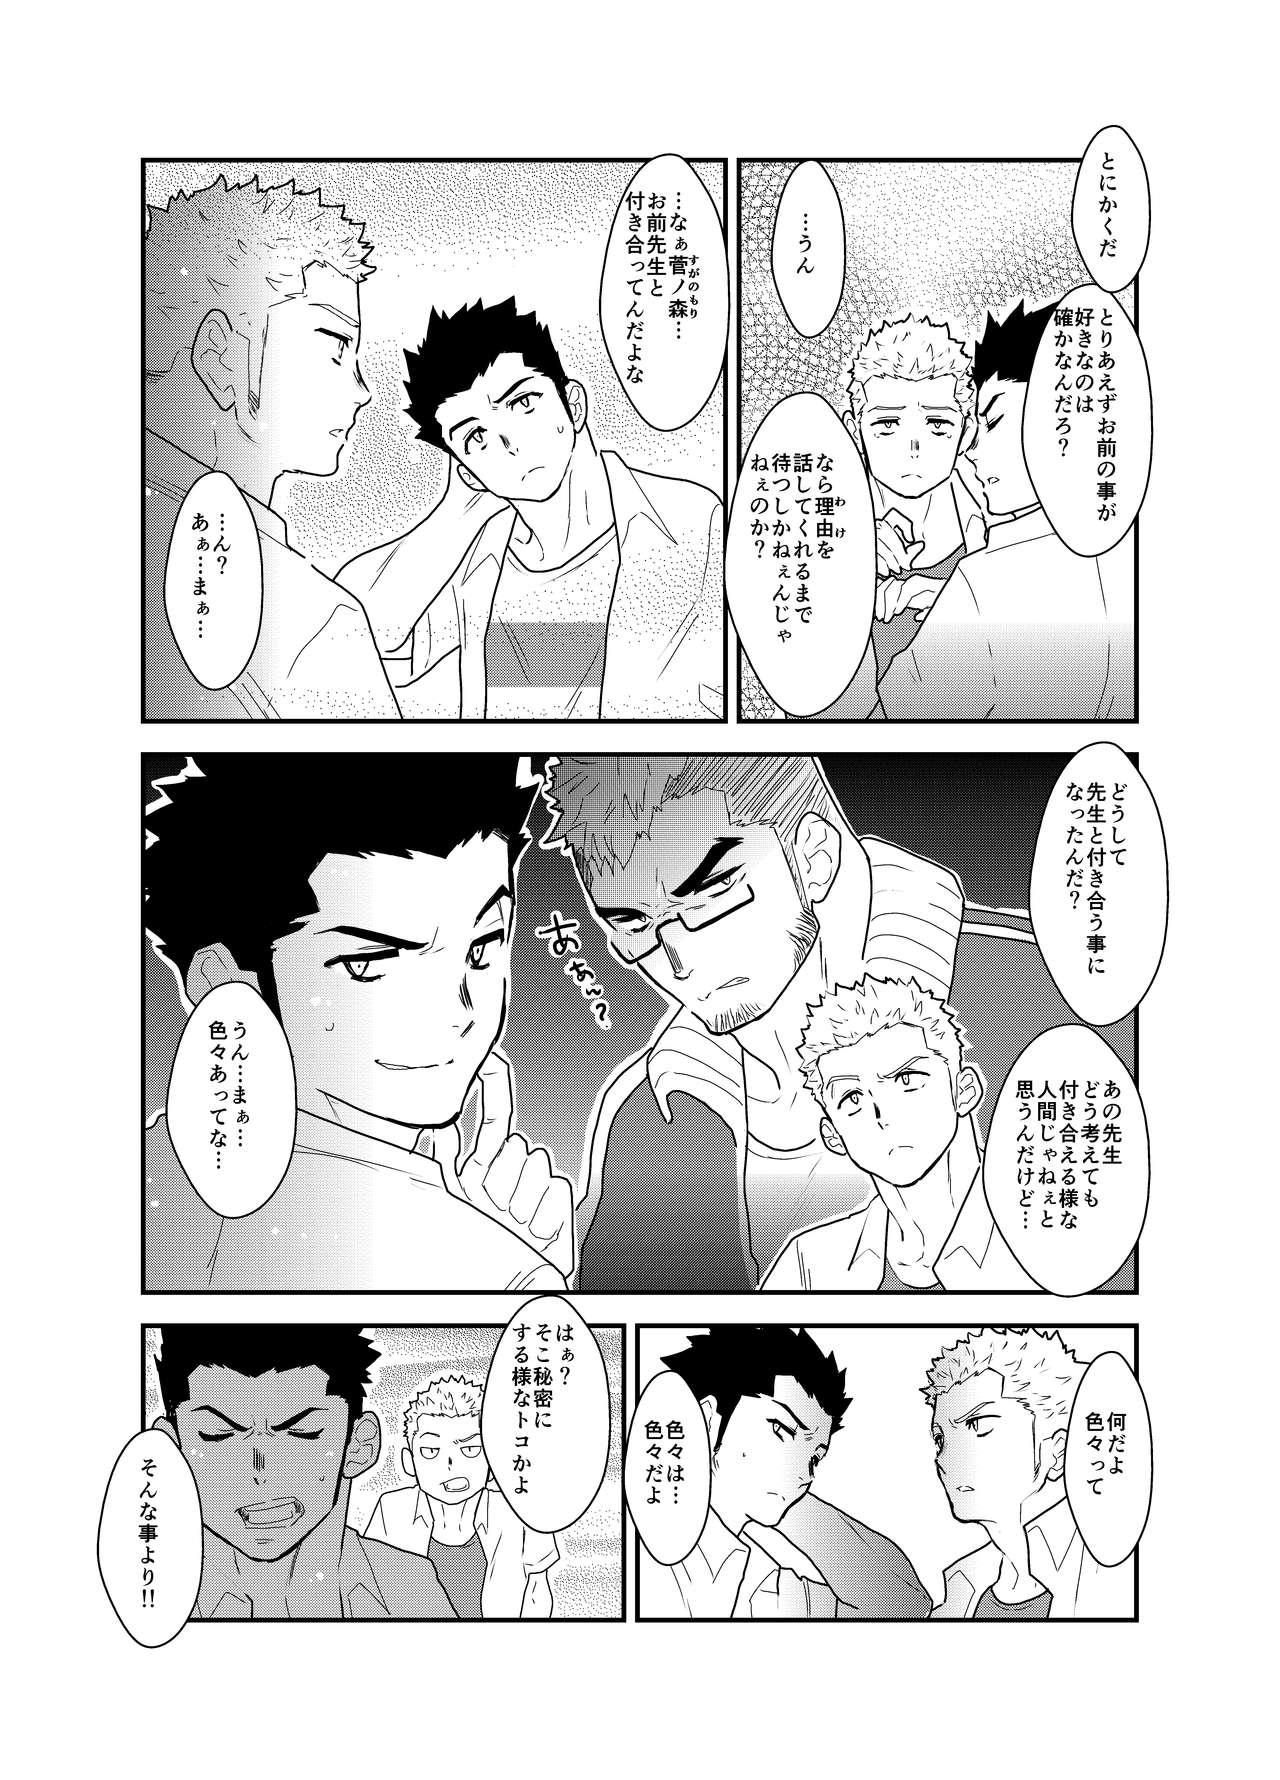 Bed Aitsu ga Ore to Tsukiaenai Riyuu ga Mattaku Wakaranai no desu ga. - Original Gay Physicals - Page 6